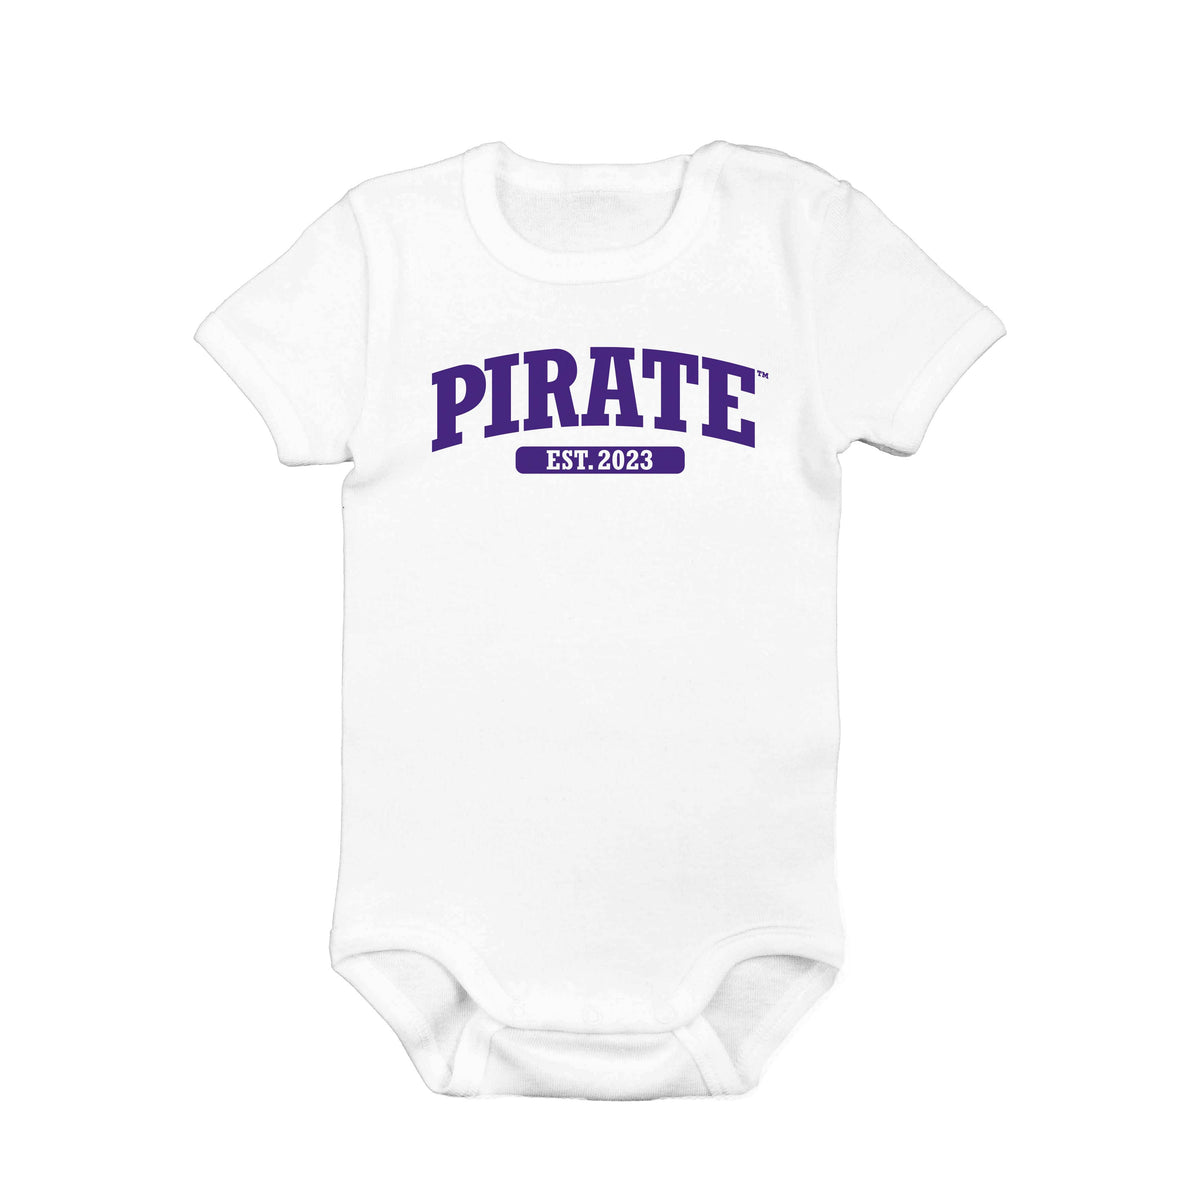 Pirate™ Bodysuit/Toddler/Youth Shirt